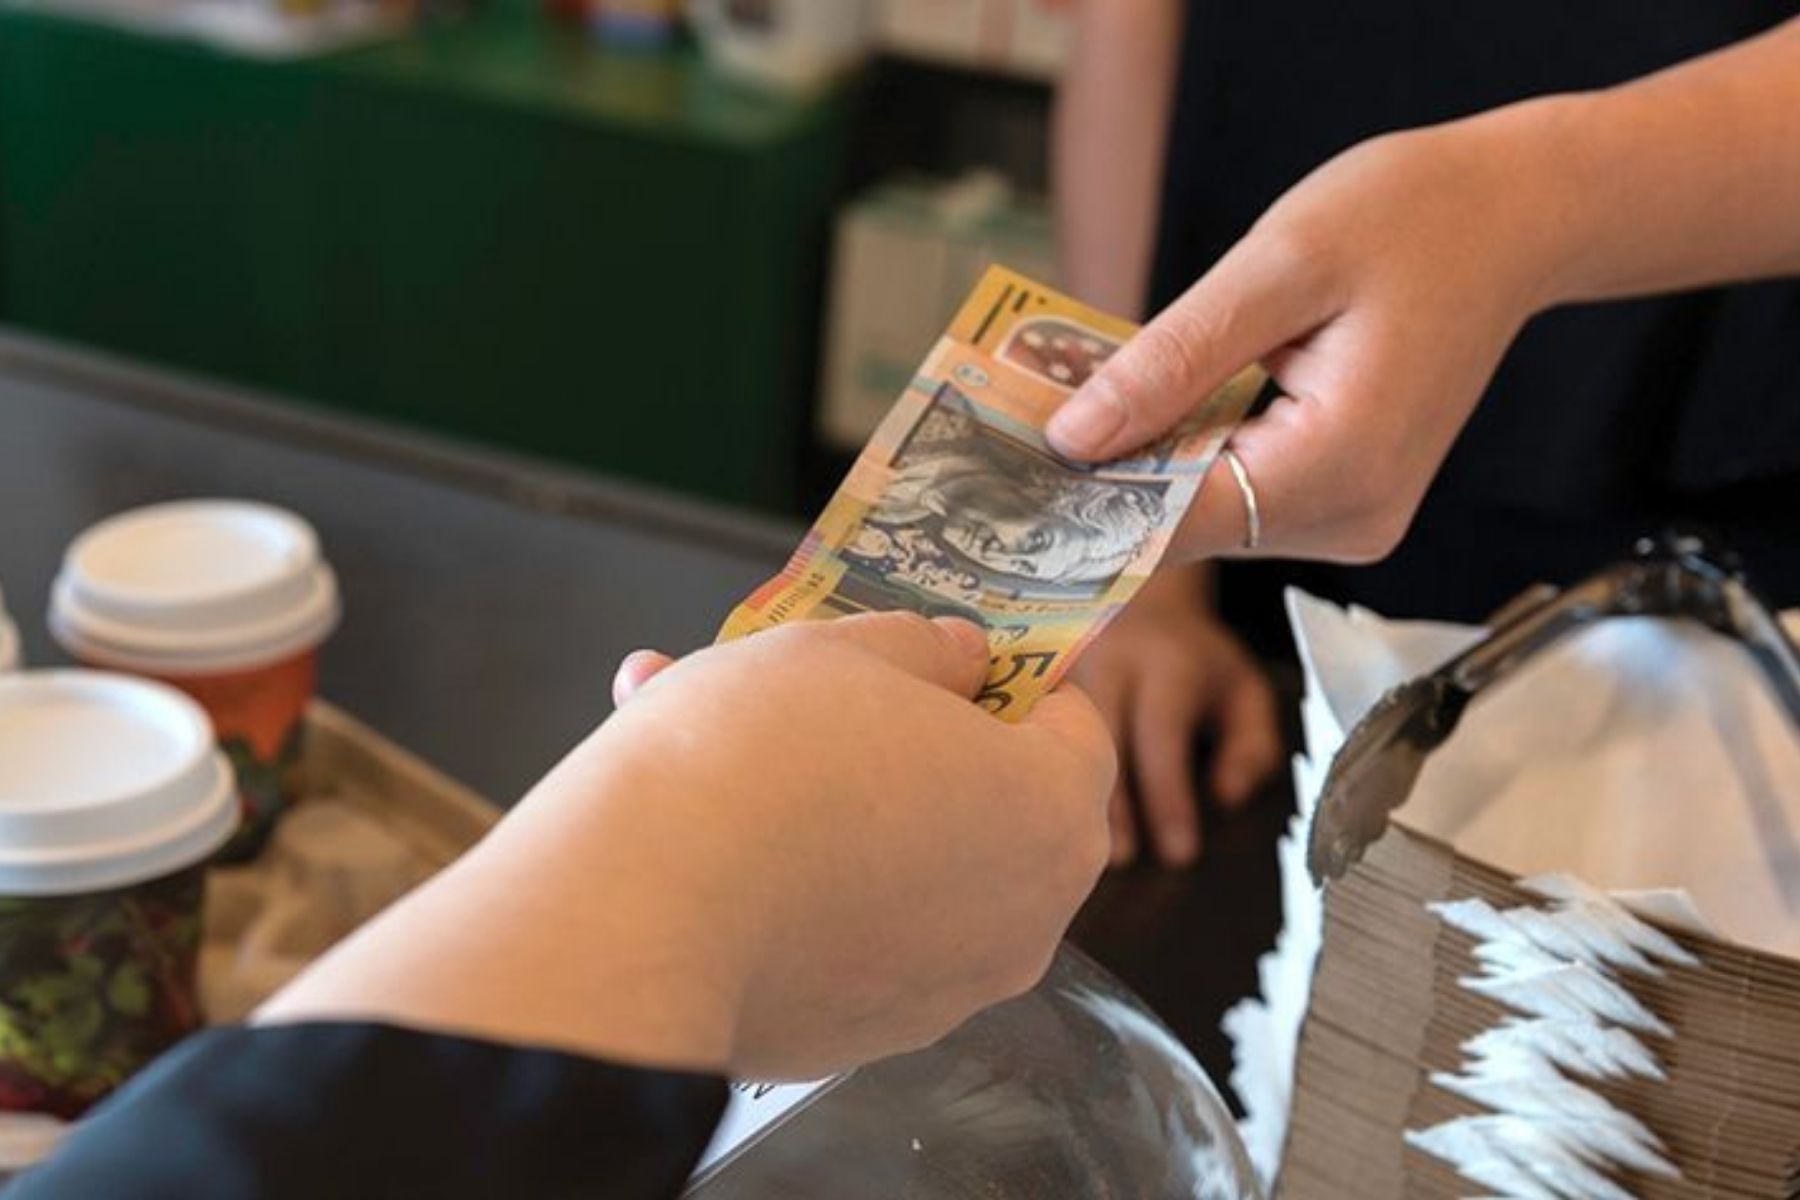 8 Ways to Spot Counterfeit Money